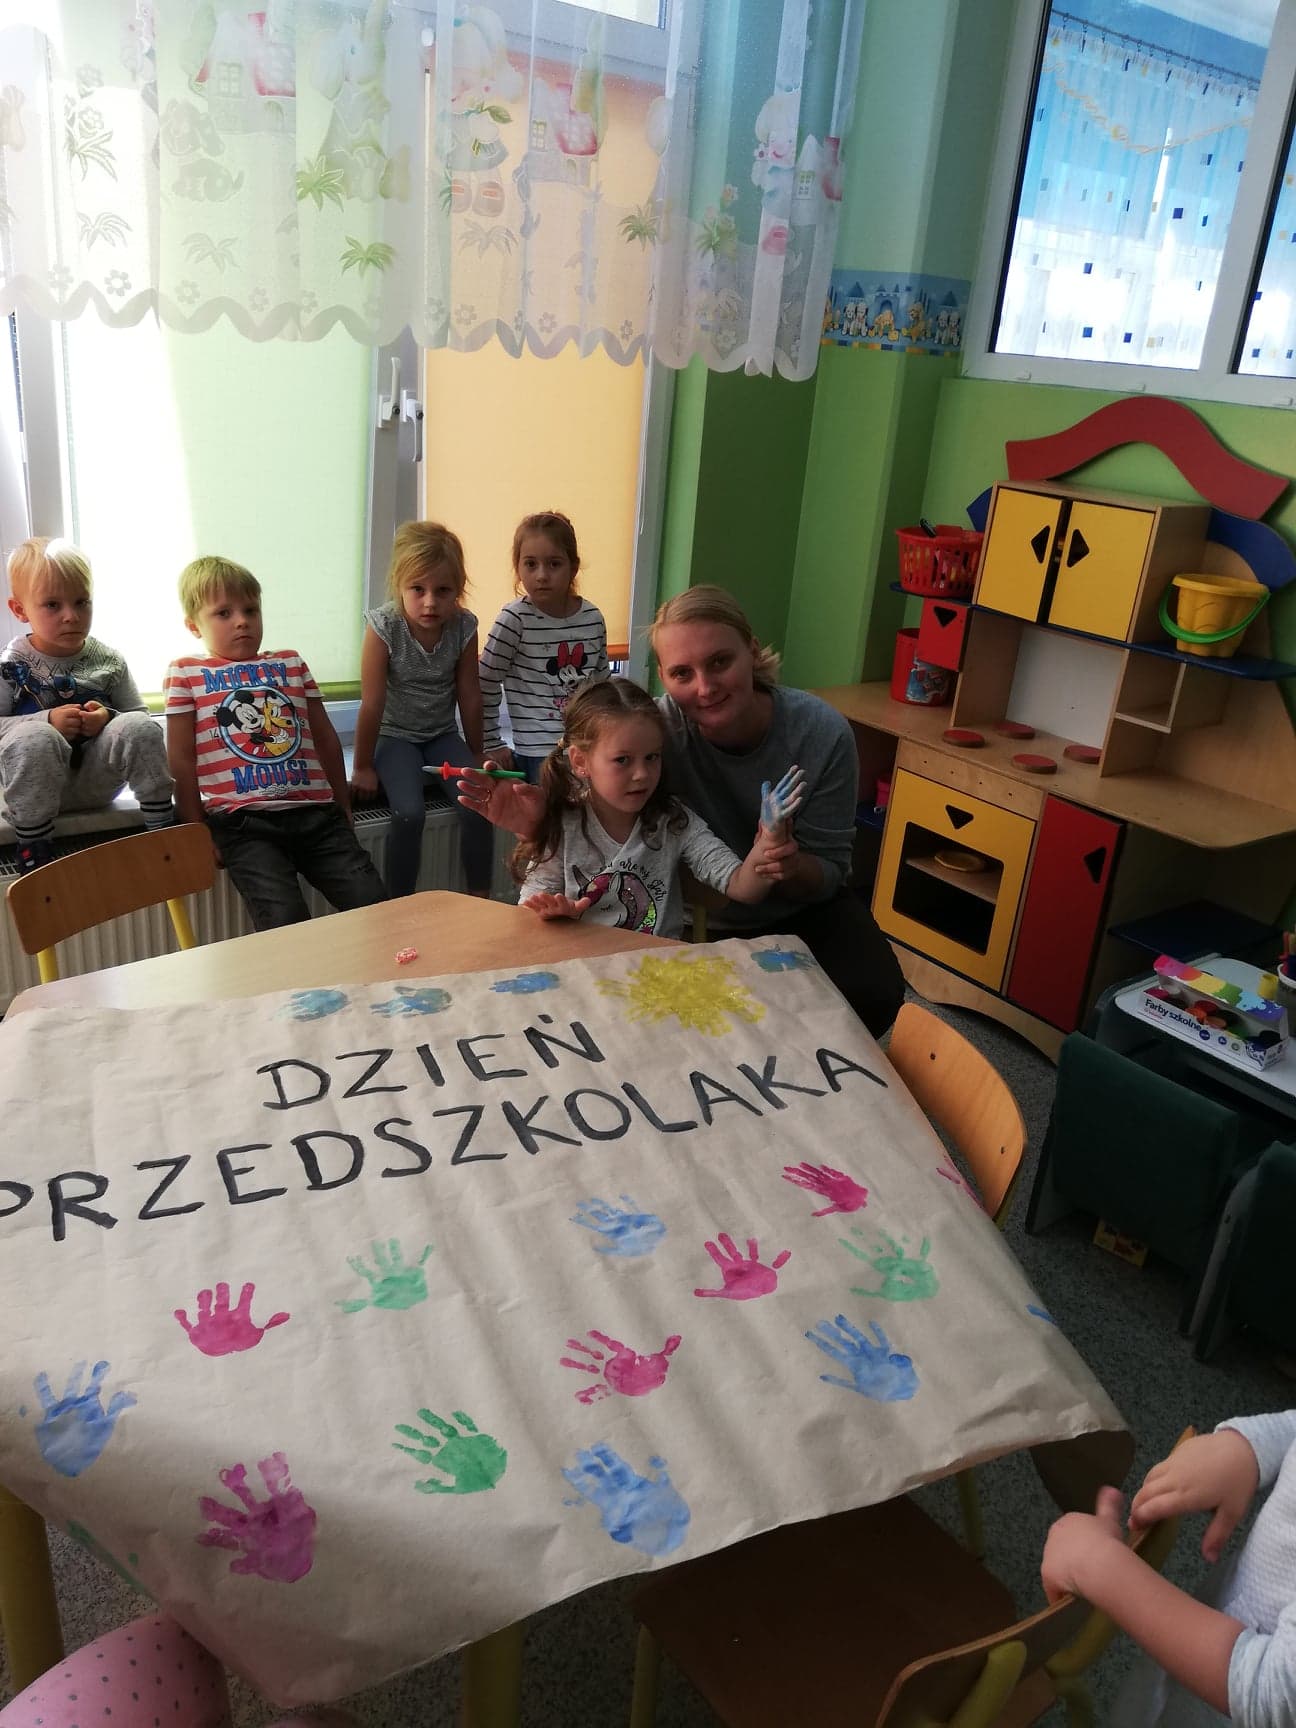 Szkoła Podstawowa Nr 1 Knurów Knurów: Ogólnopolski Dzień Przedszkolaka w ZSP nr 1 | IKNW - iKnurów.pl